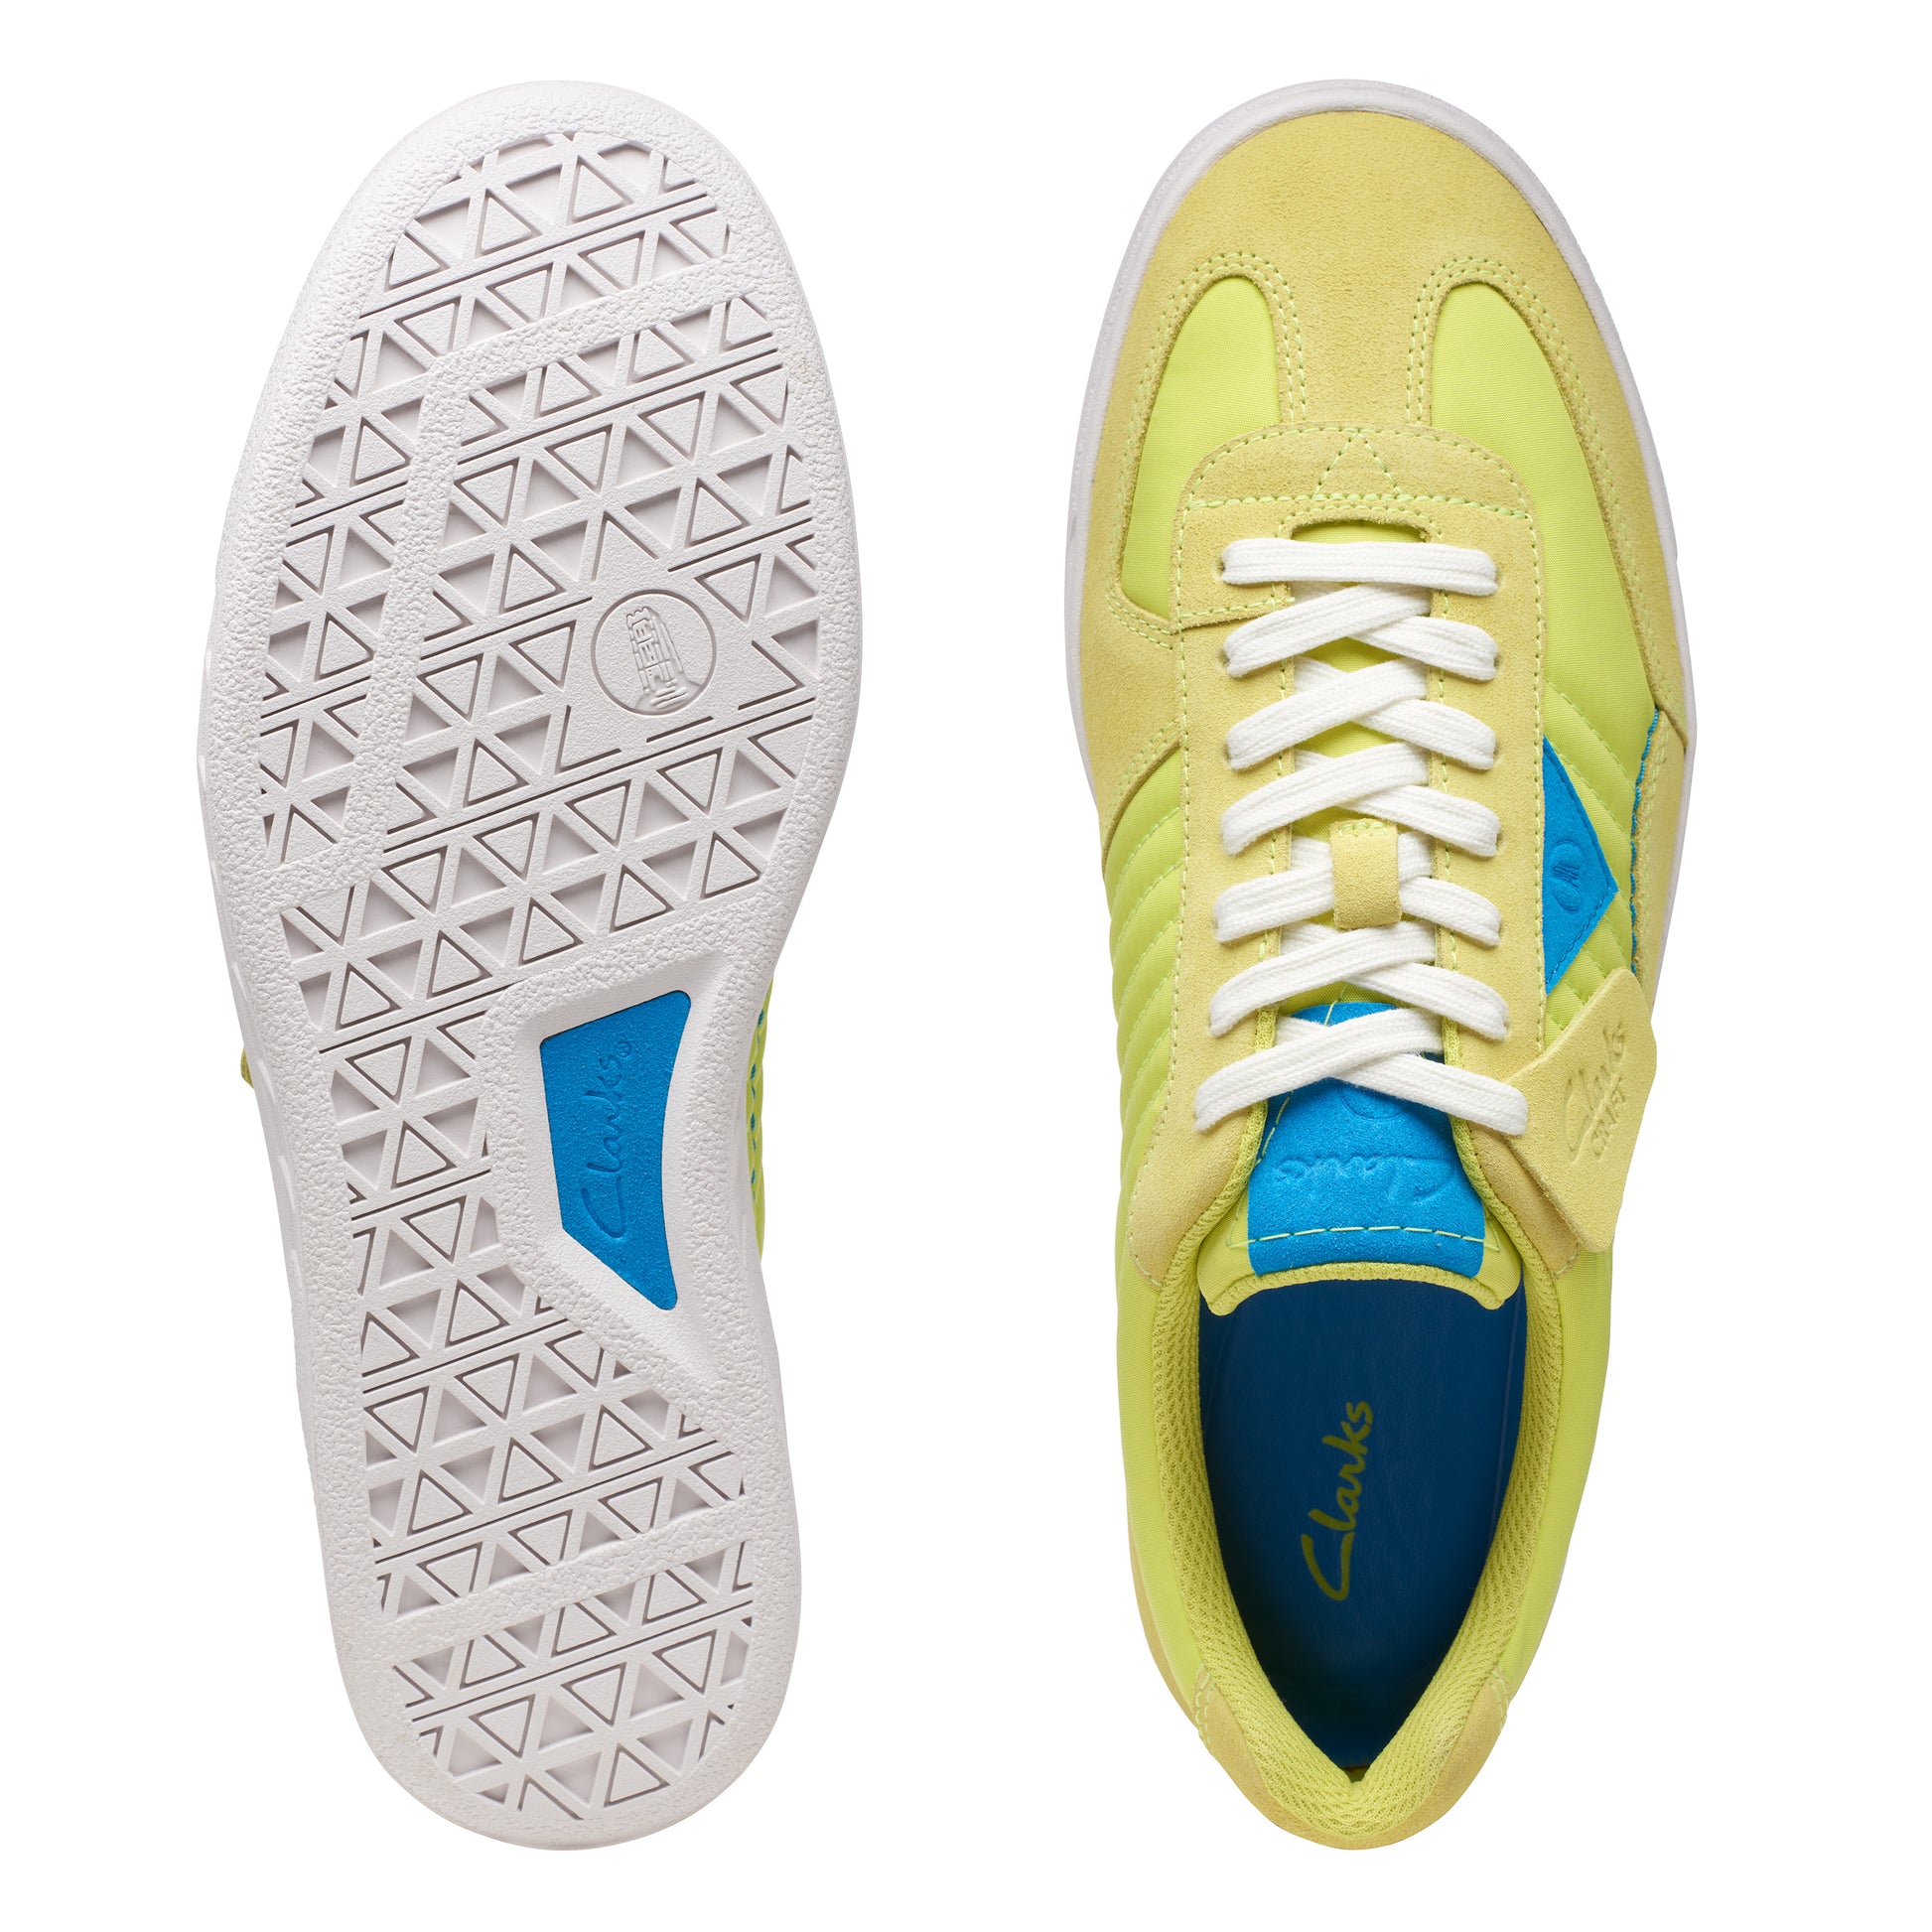 Sneakers De La Marca Clarks Para Hombre Modelo Craftrally Ace Pale Lime En Color Amarillo